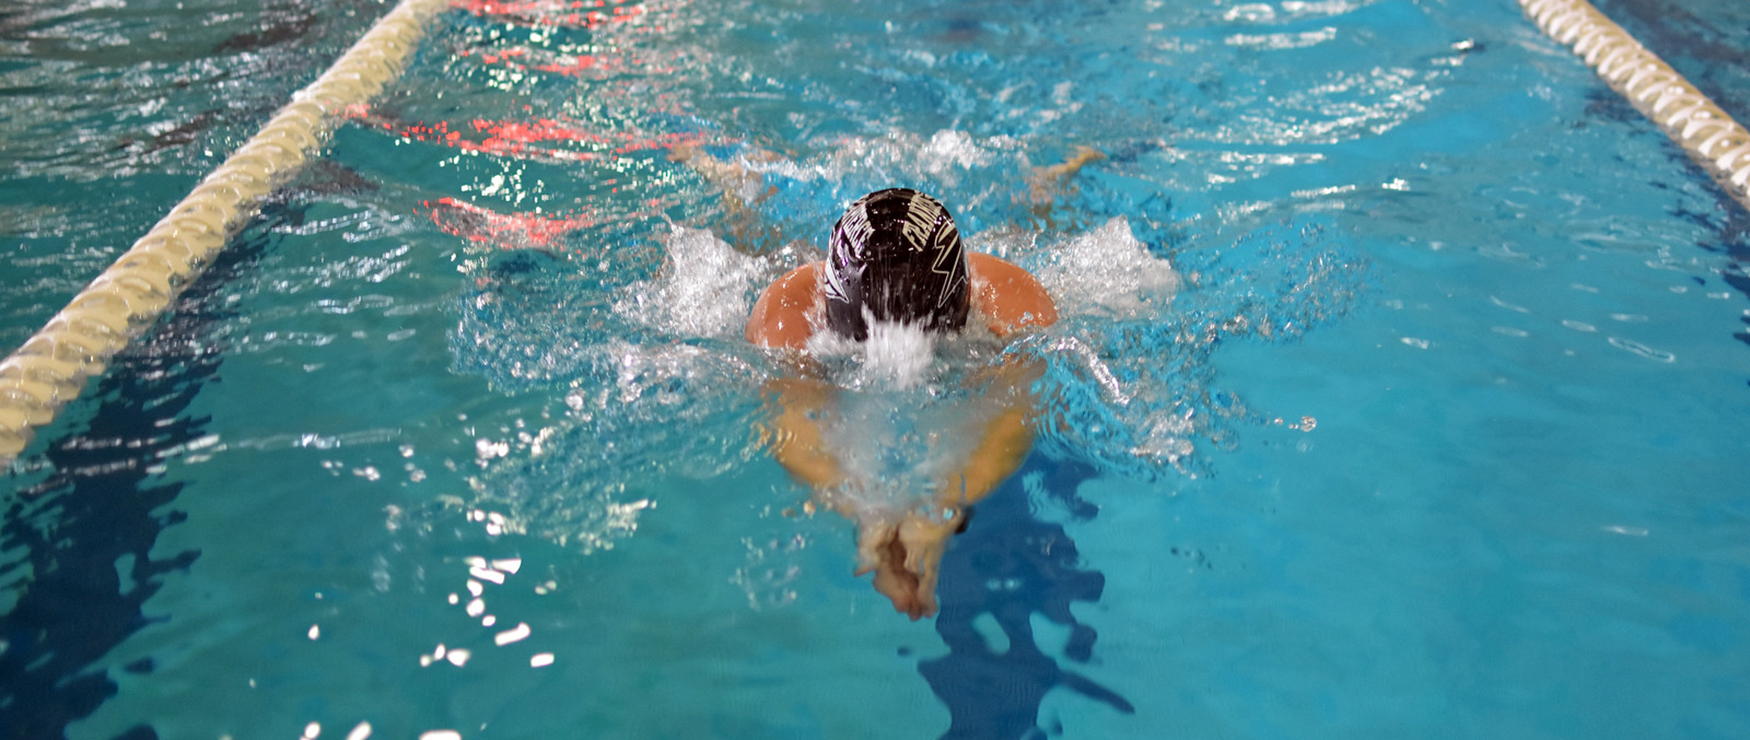 Franklin Pierce women's swimming